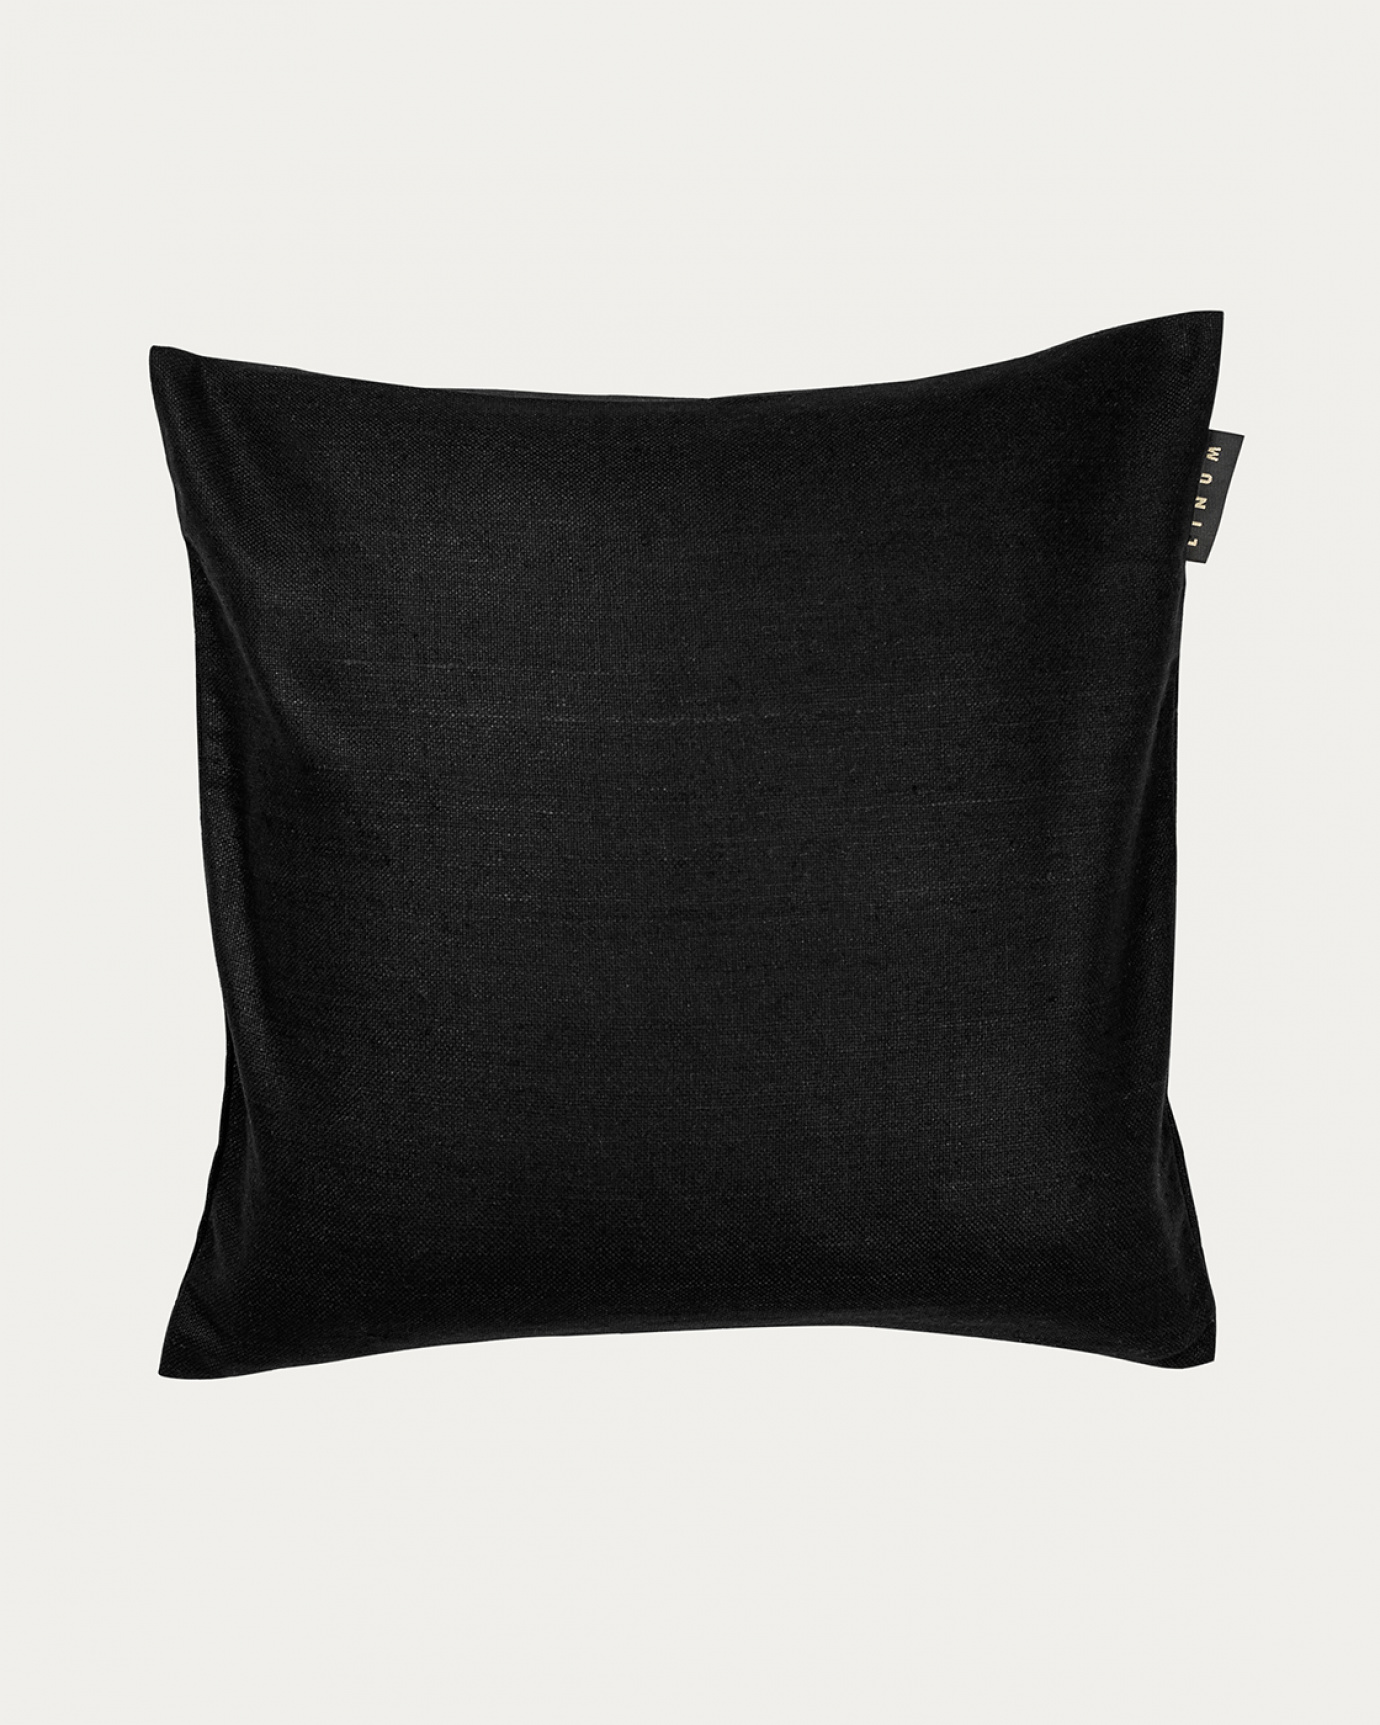 Produktbild svart SETA kuddfodral av 100% råsiden som ger ett fint lyster från LINUM DESIGN. Storlek 50x50 cm.